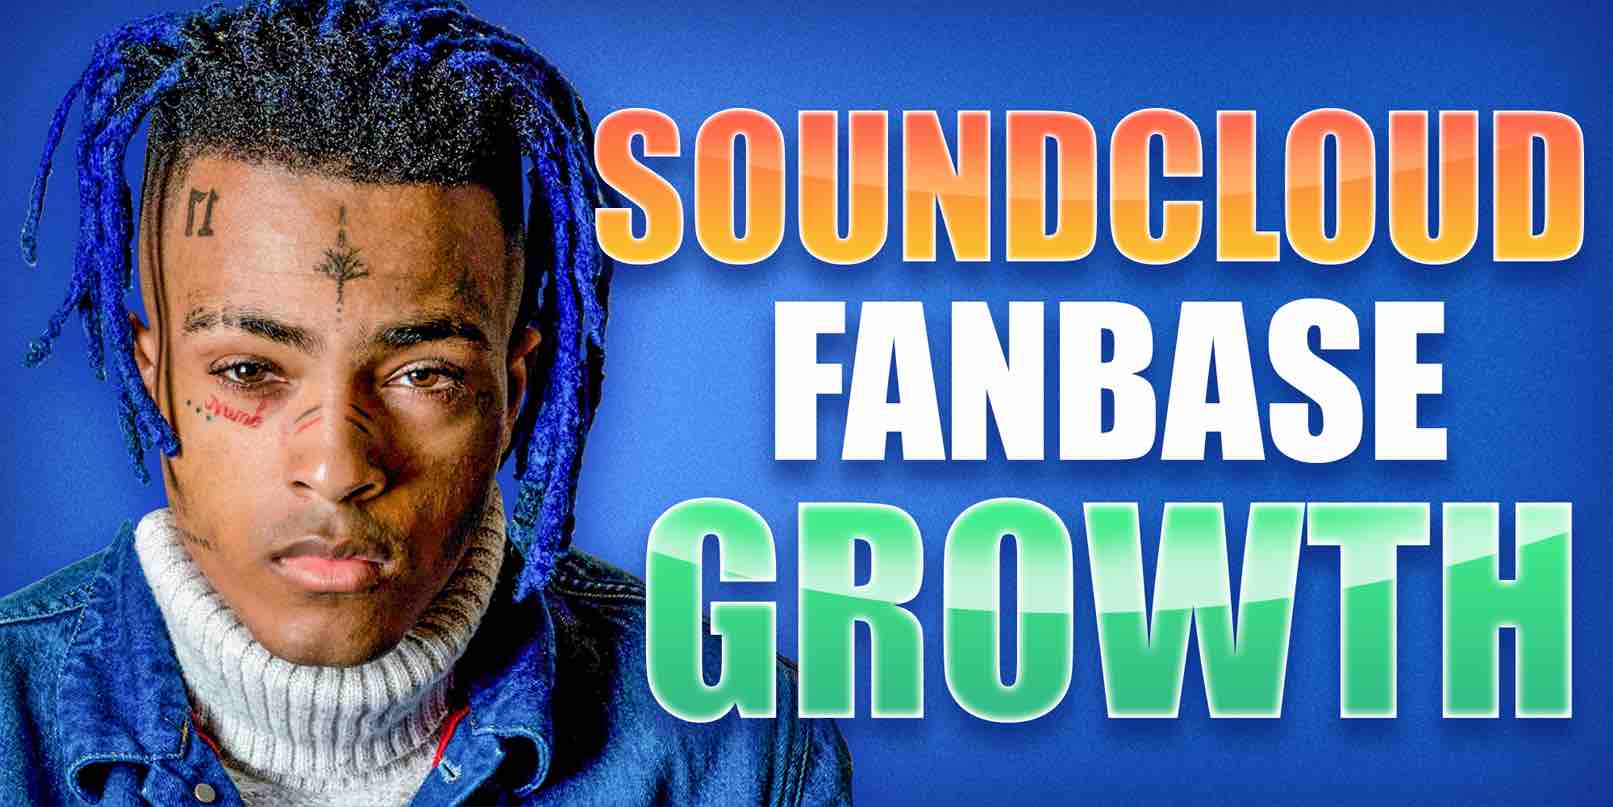 SoundCloud fanbase growth